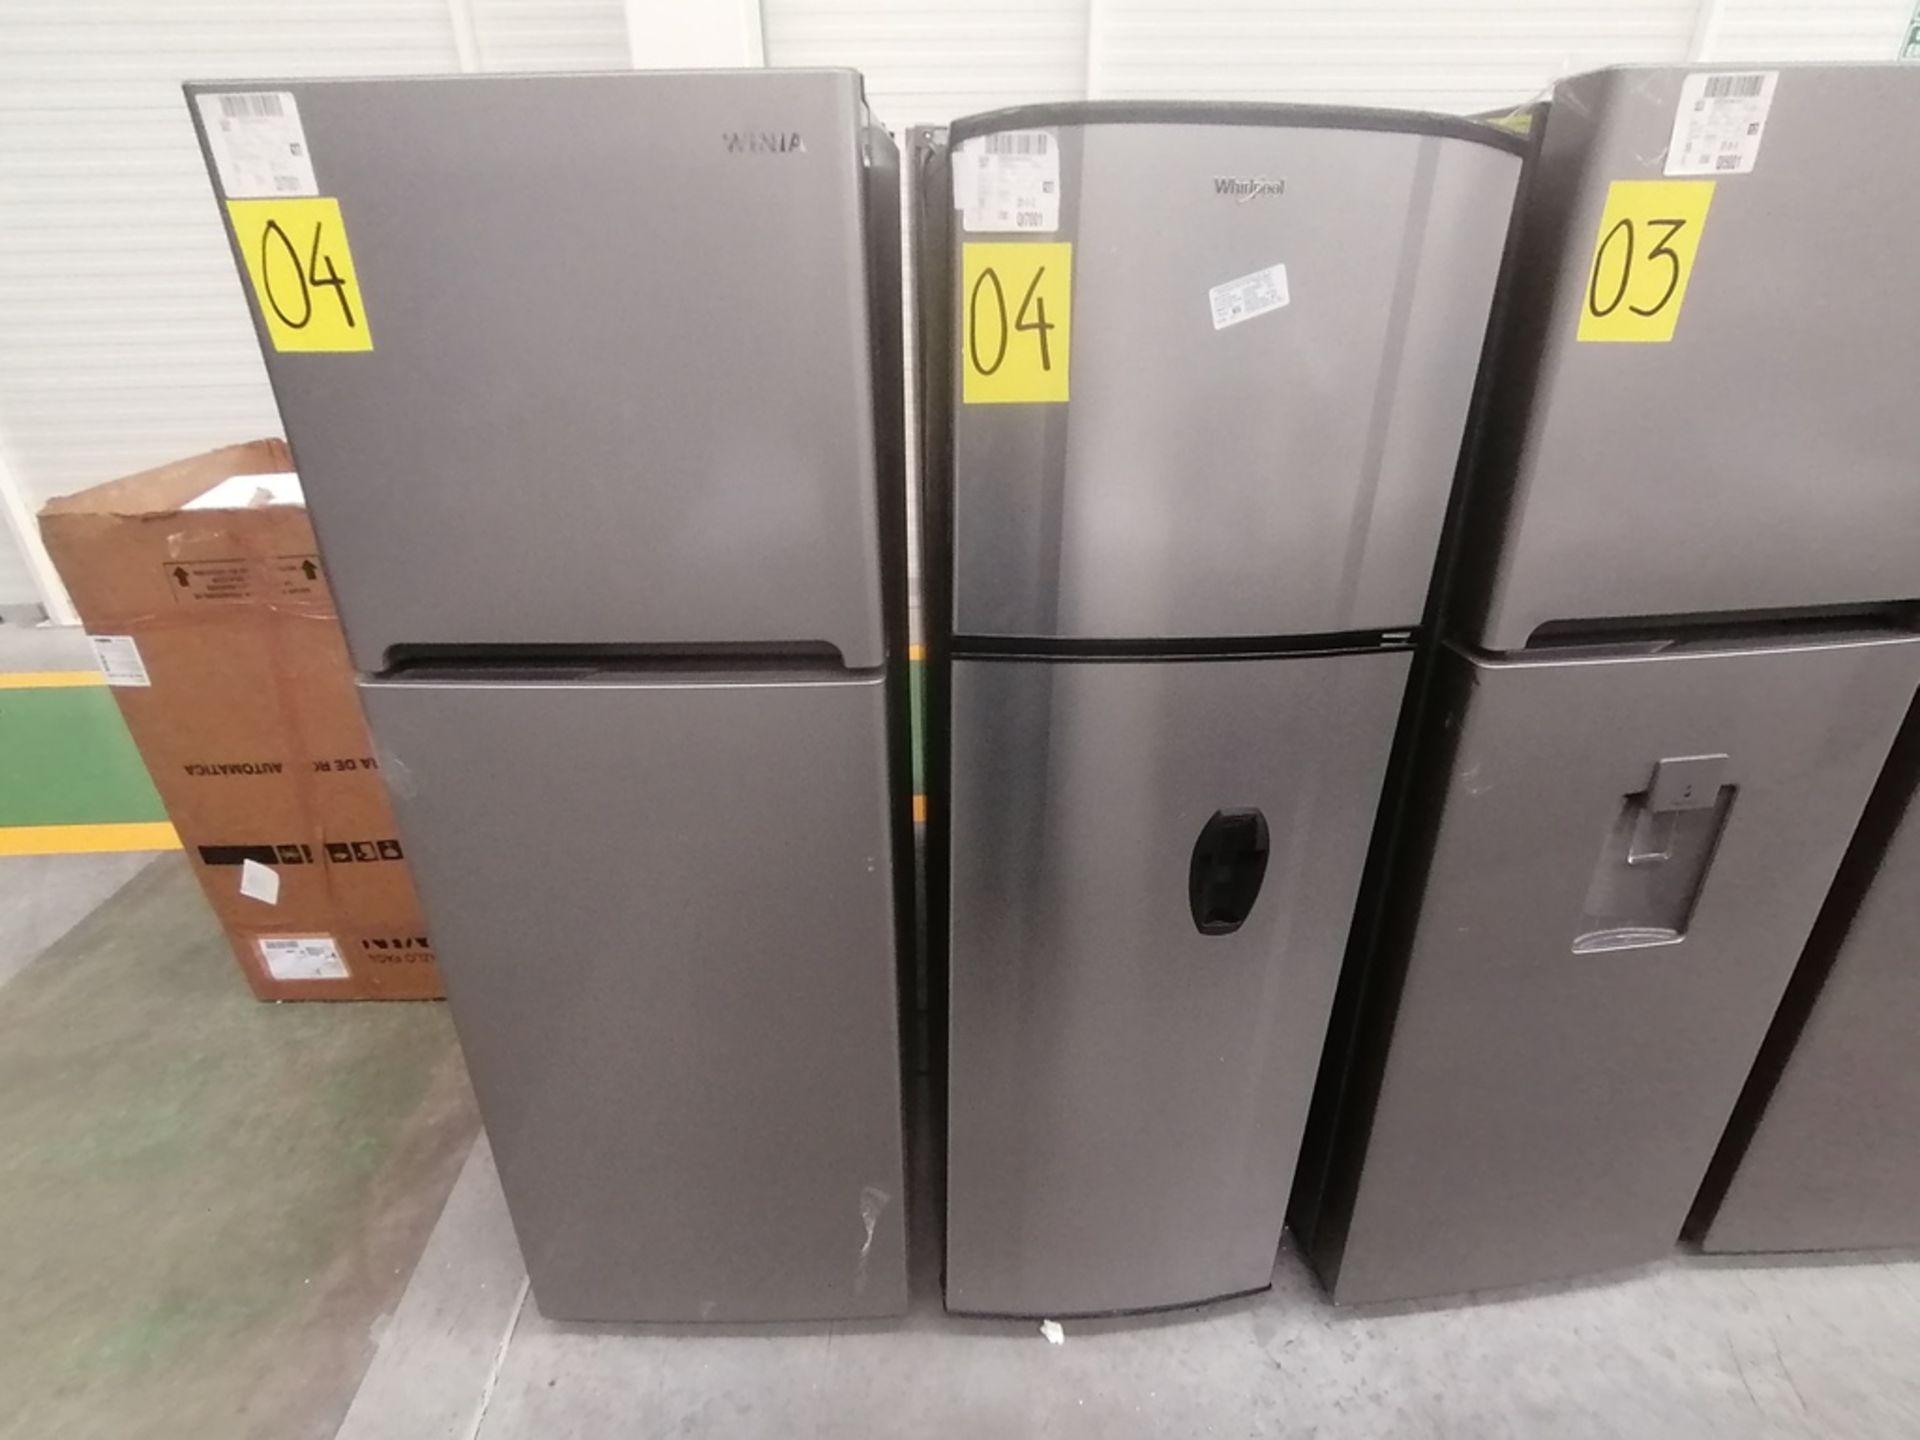 Lote de 2 refrigeradores incluye: 1 Refrigerador con dispensador de agua, Marca Whirlpool, Modelo W - Image 3 of 15